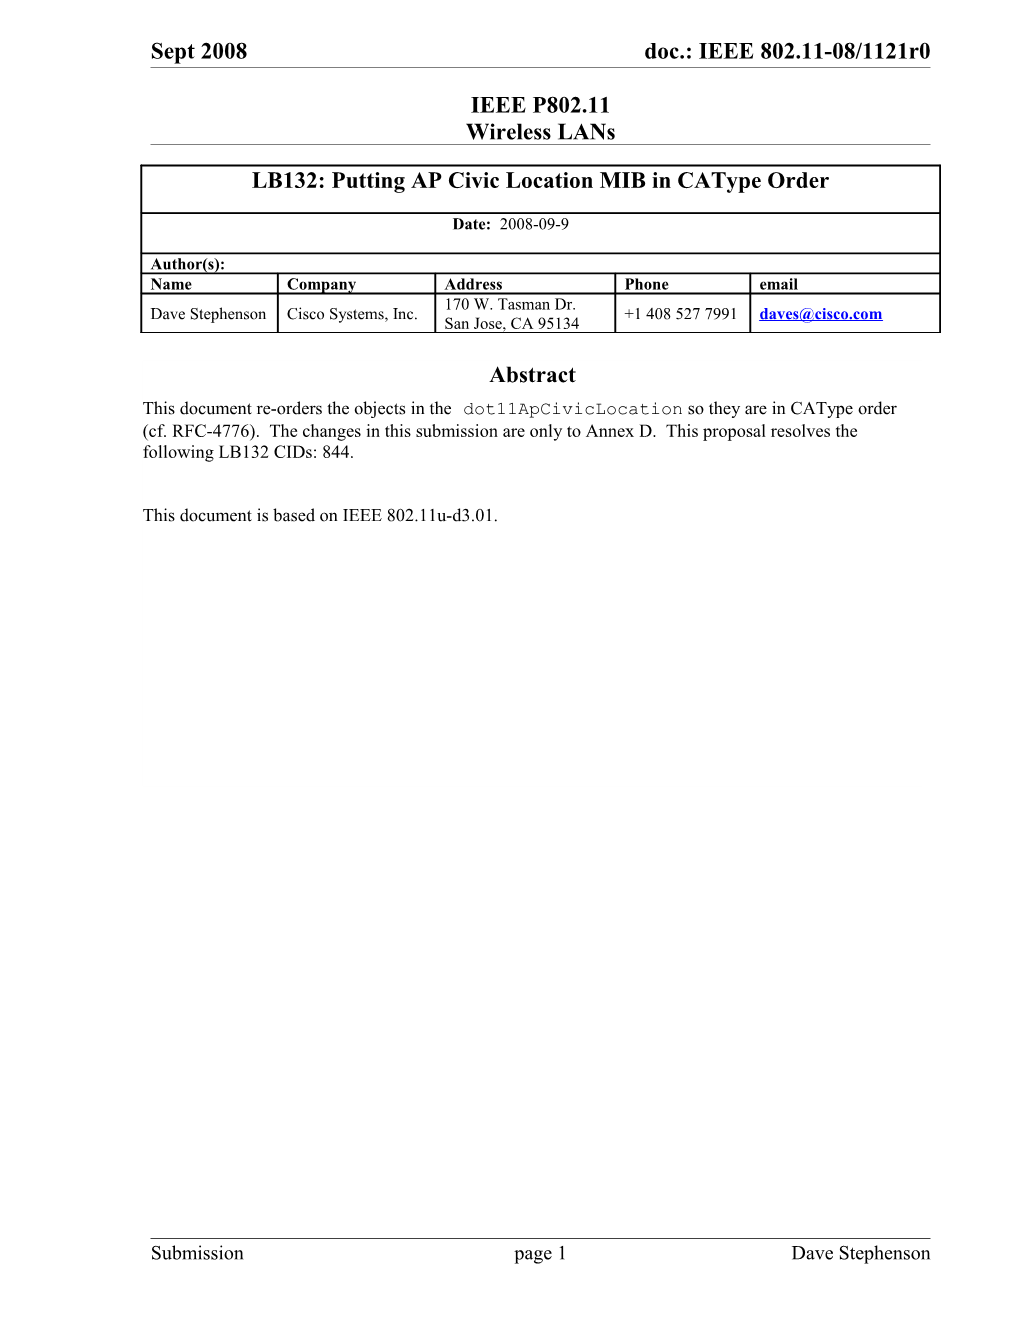 LB132: Putting AP Civic Location MIB in Catype Order